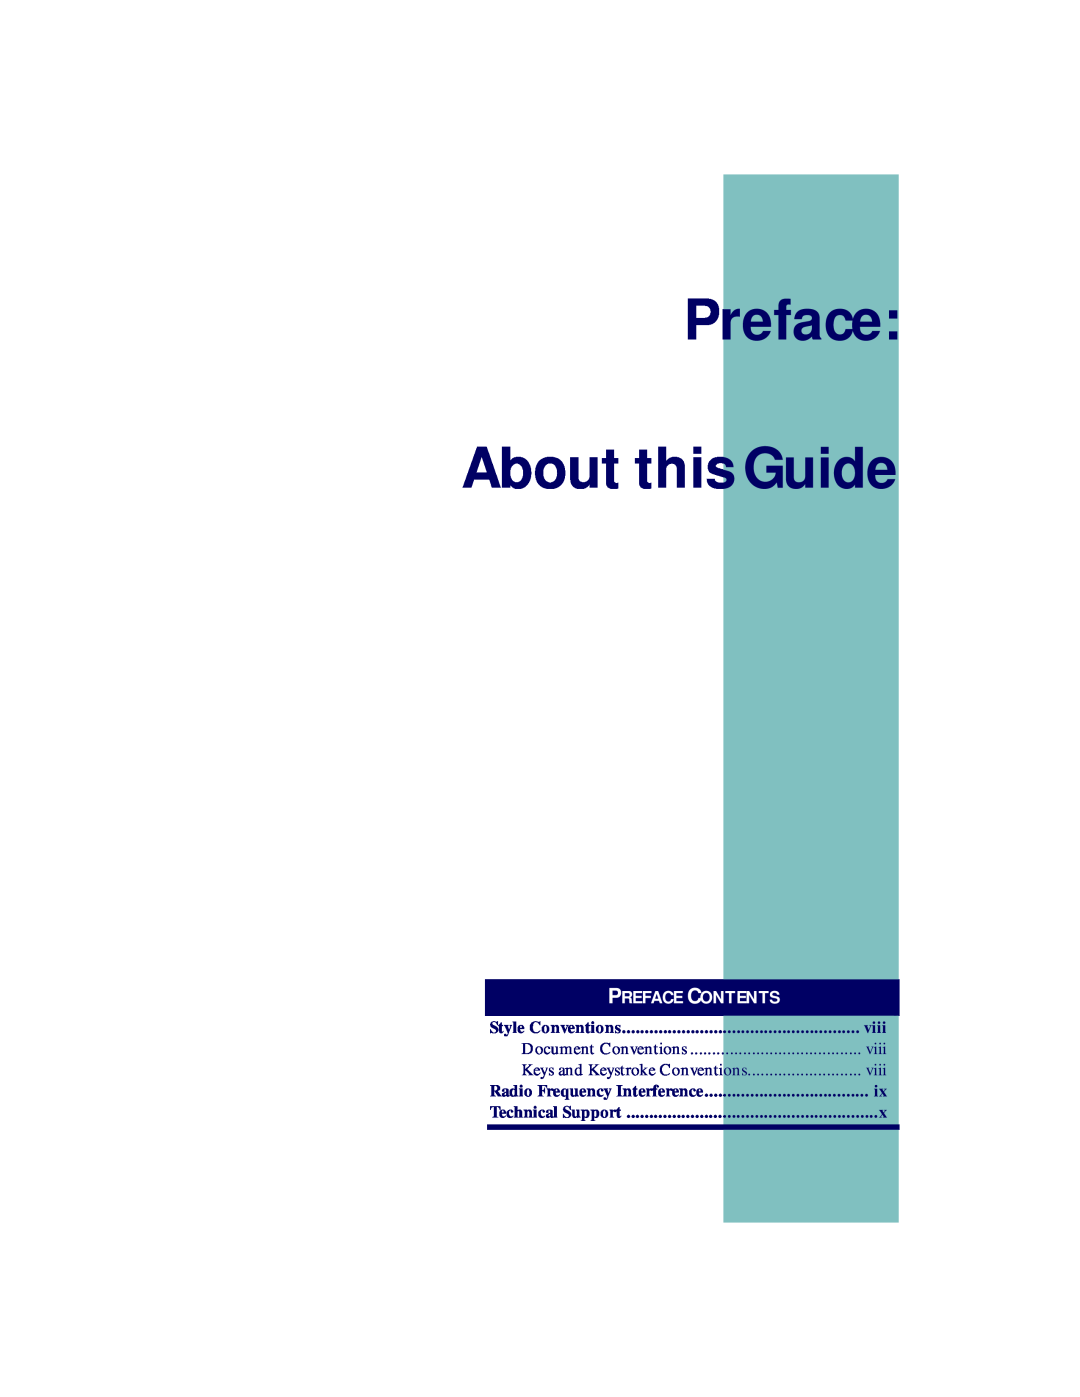 PSC PT2000, TopGun manual Preface About this Guide, Preface Contents 